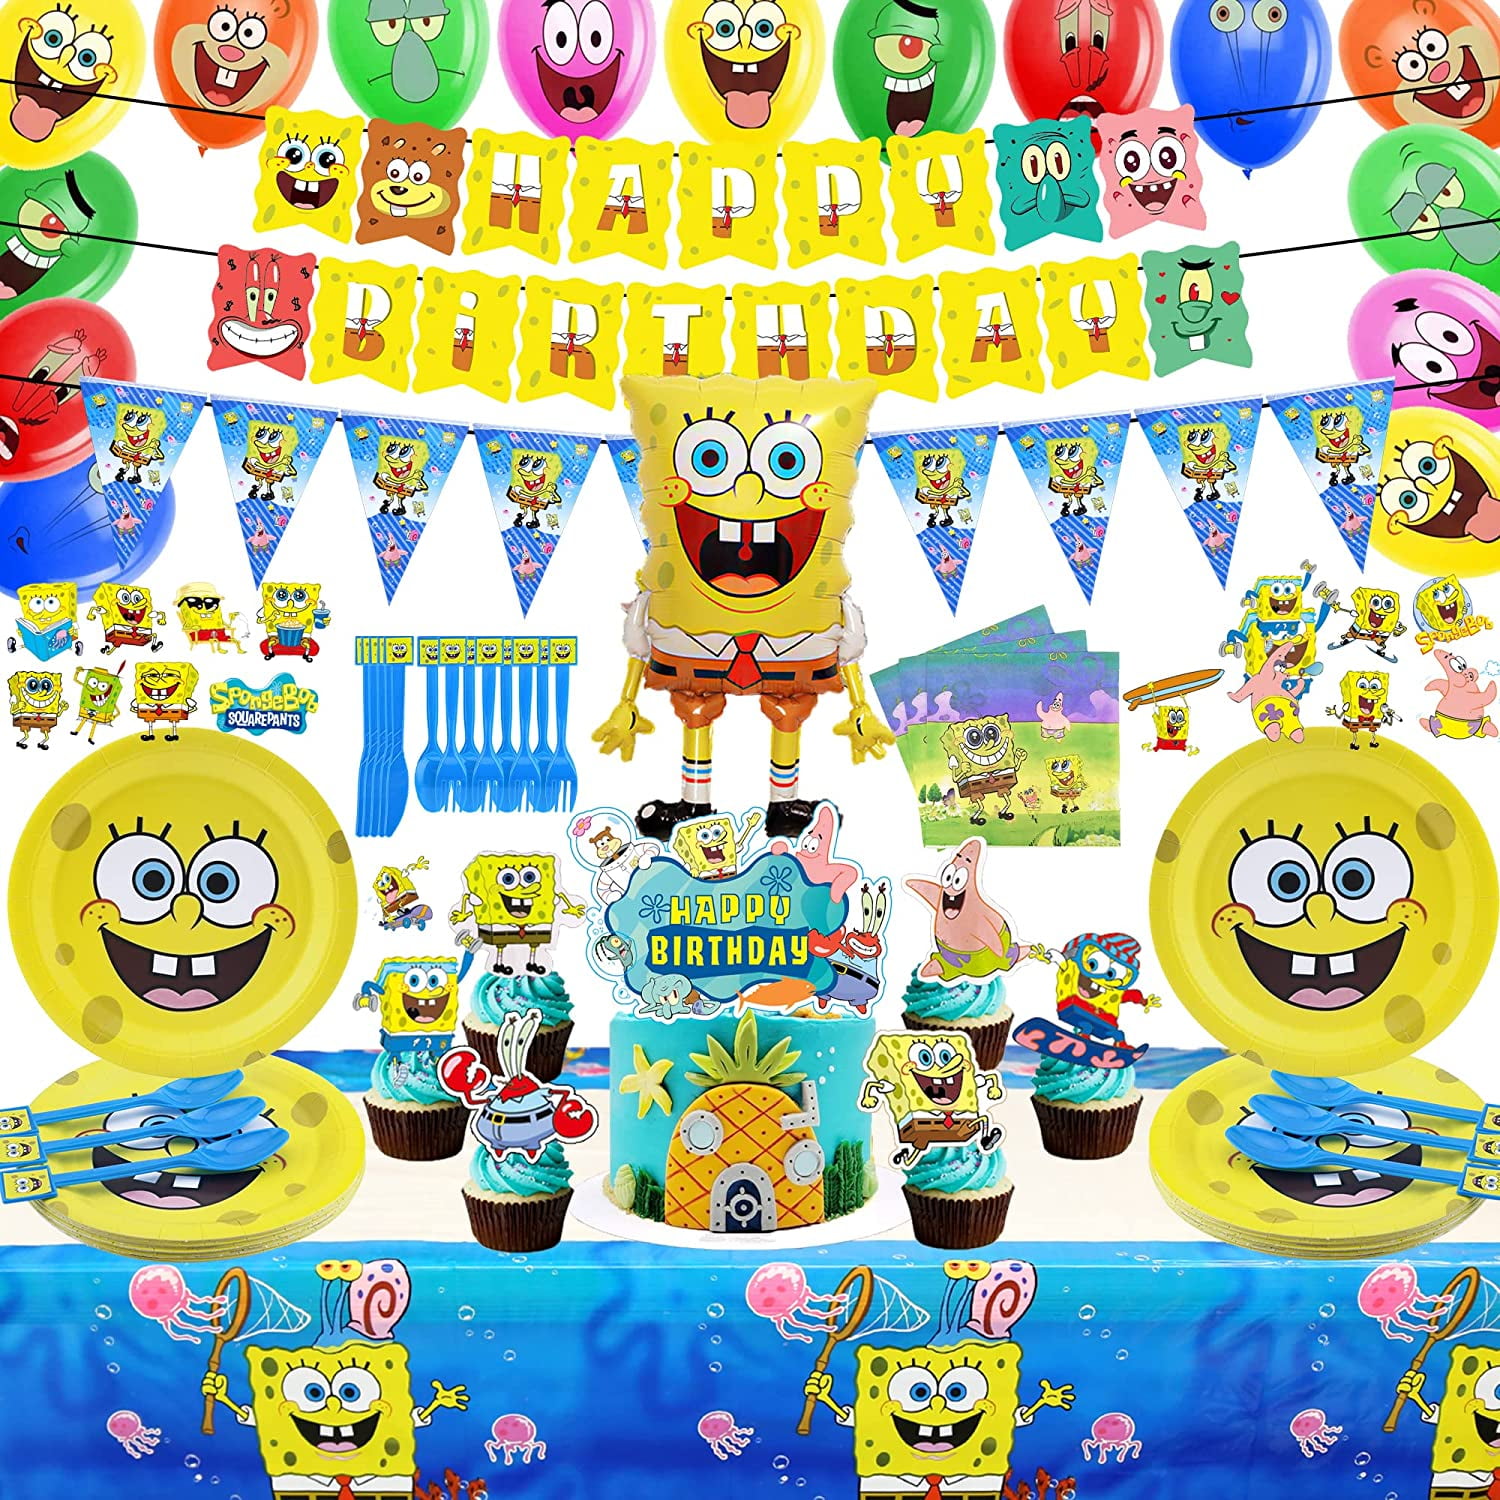 Spongebob Party Supplies Set - Serves 16 Guests - Spongebob